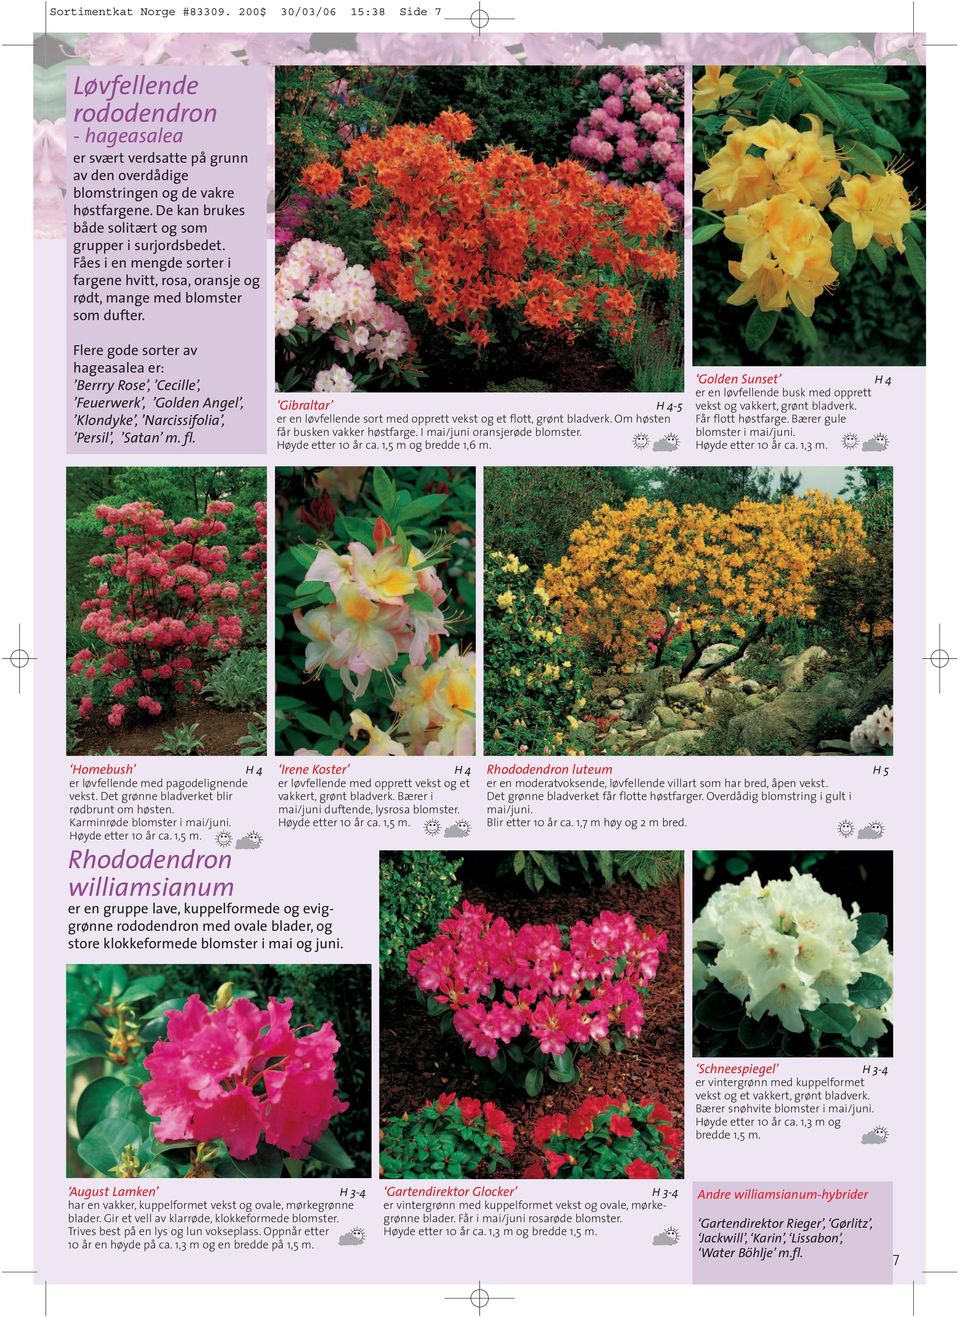 Flere gode sorter av hageasalea er: Berrry Rose, Cecille, Feuerwerk, Golden Angel, Klondyke, Narcissifolia, Persil, Satan m. fl.